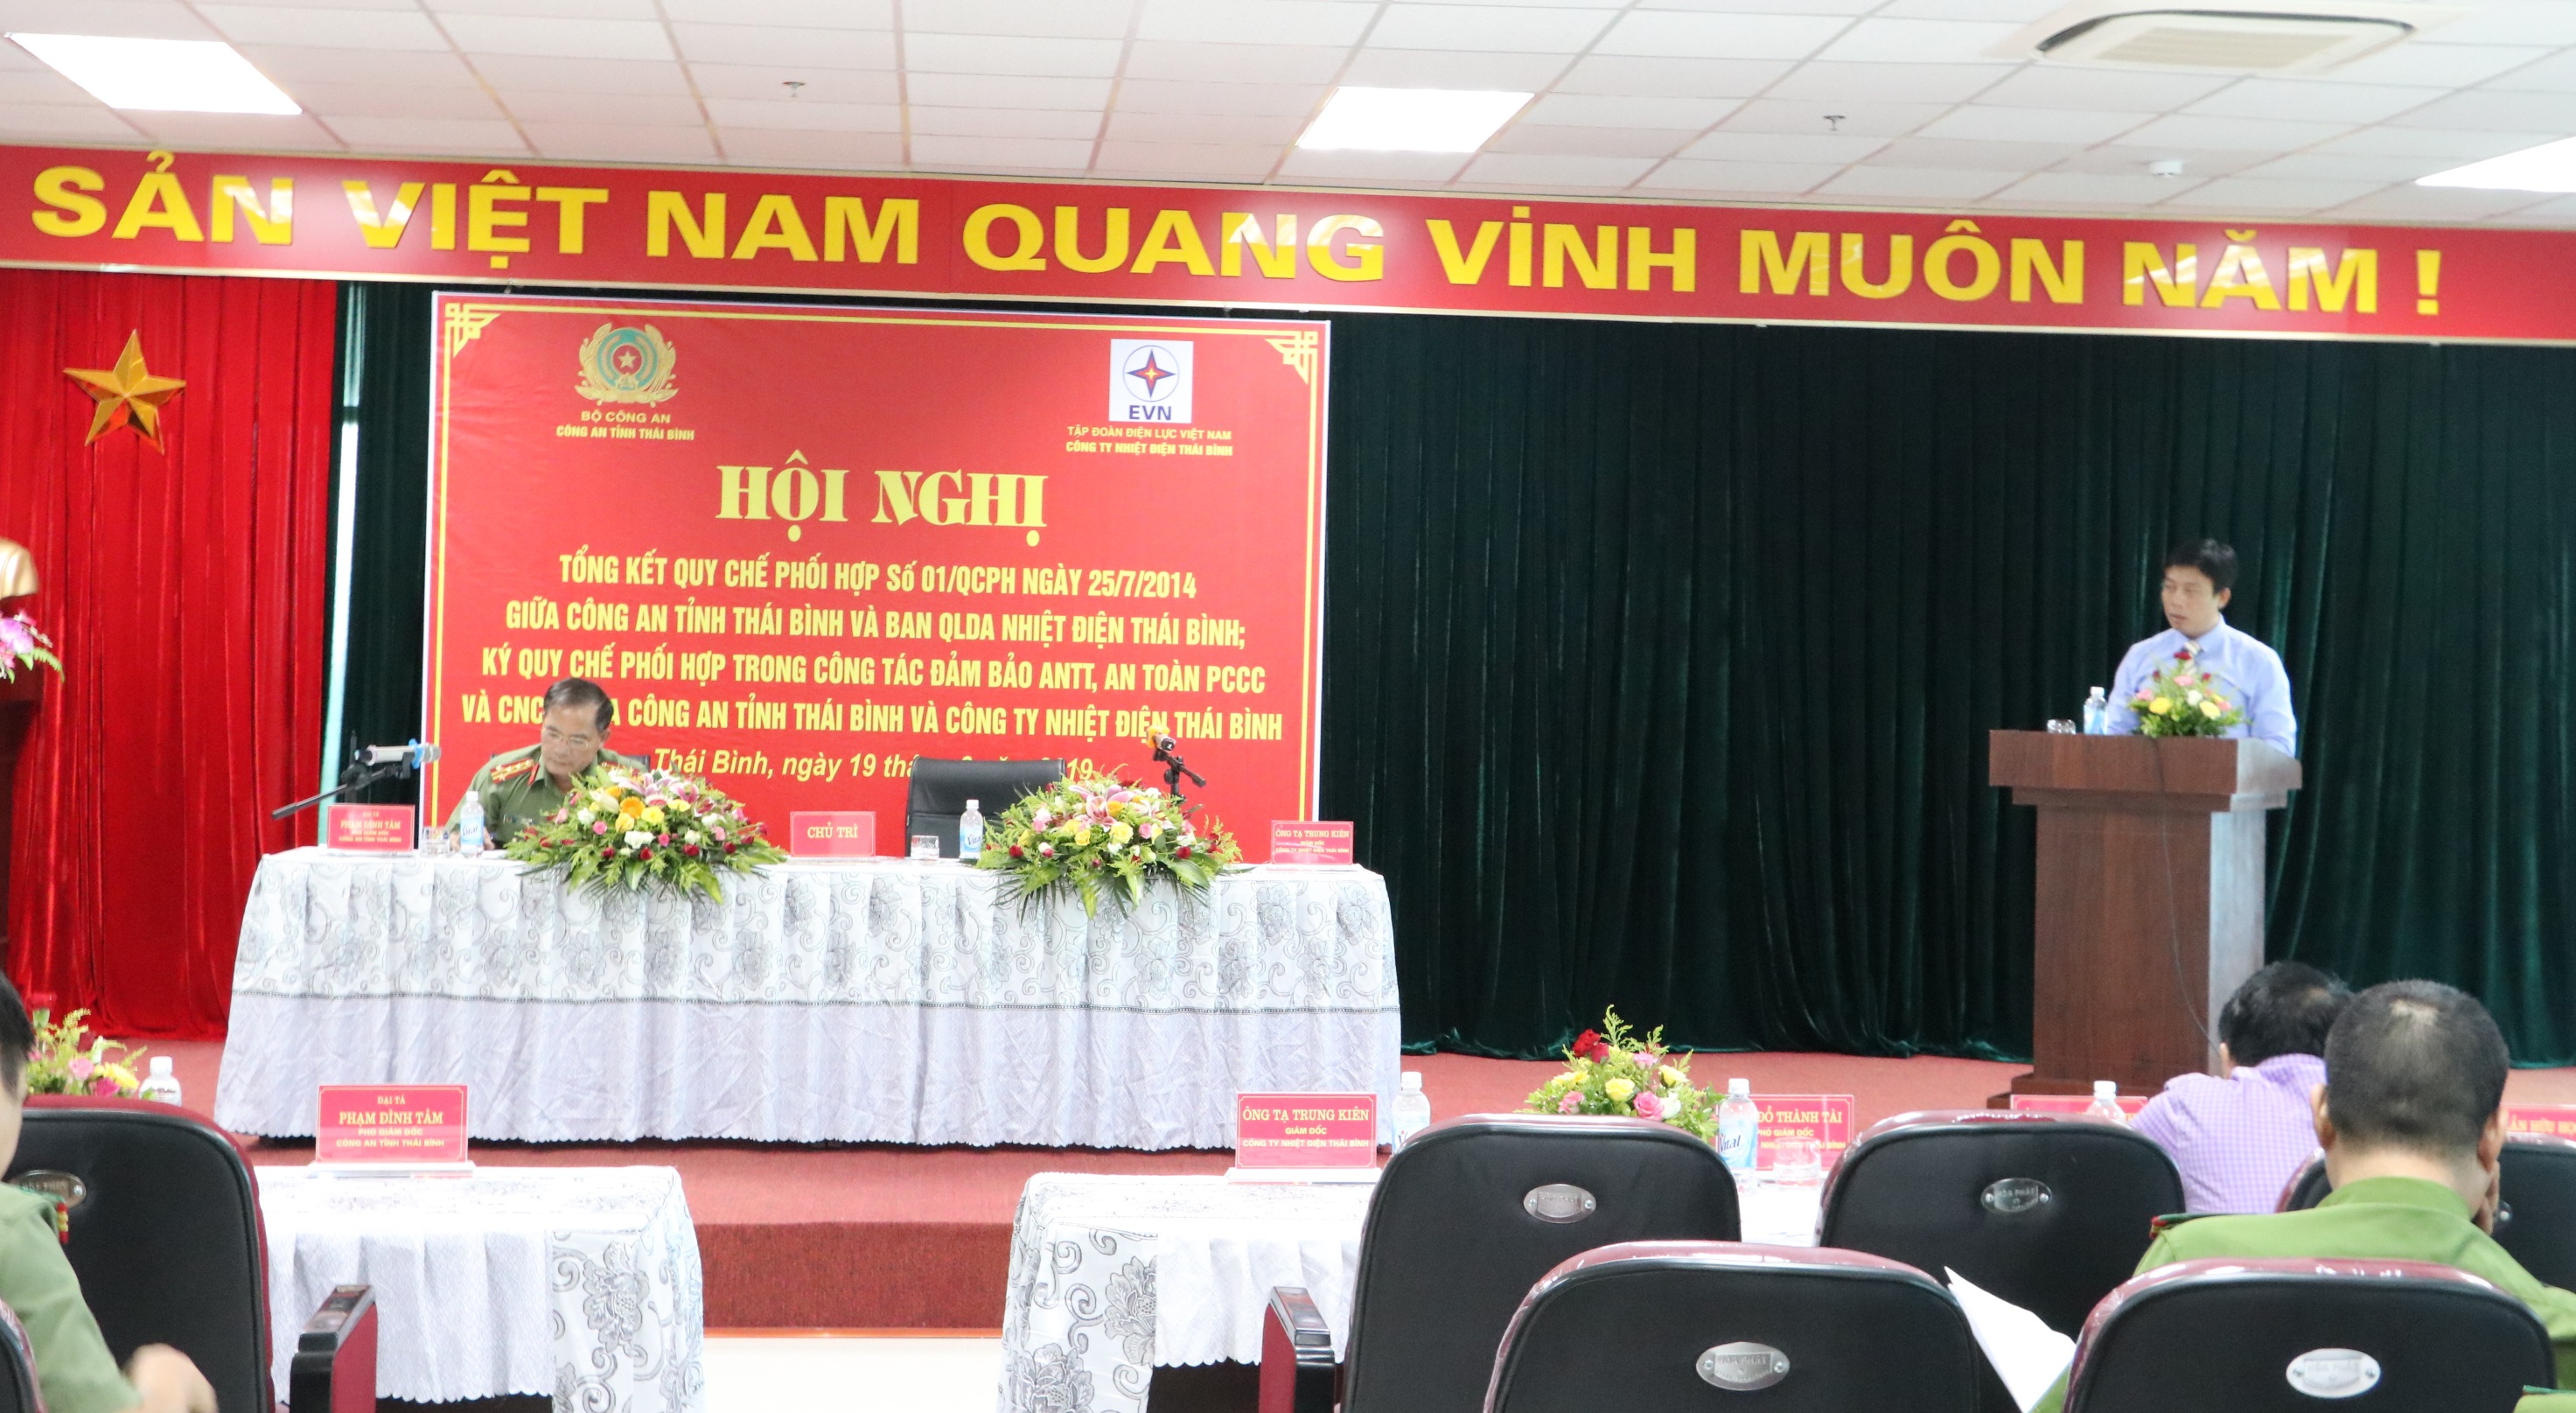 Ông Tạ Trung Kiên – Giám đốc Công ty Nhiệt điện Thái Bình phát biểu tại Hội nghị